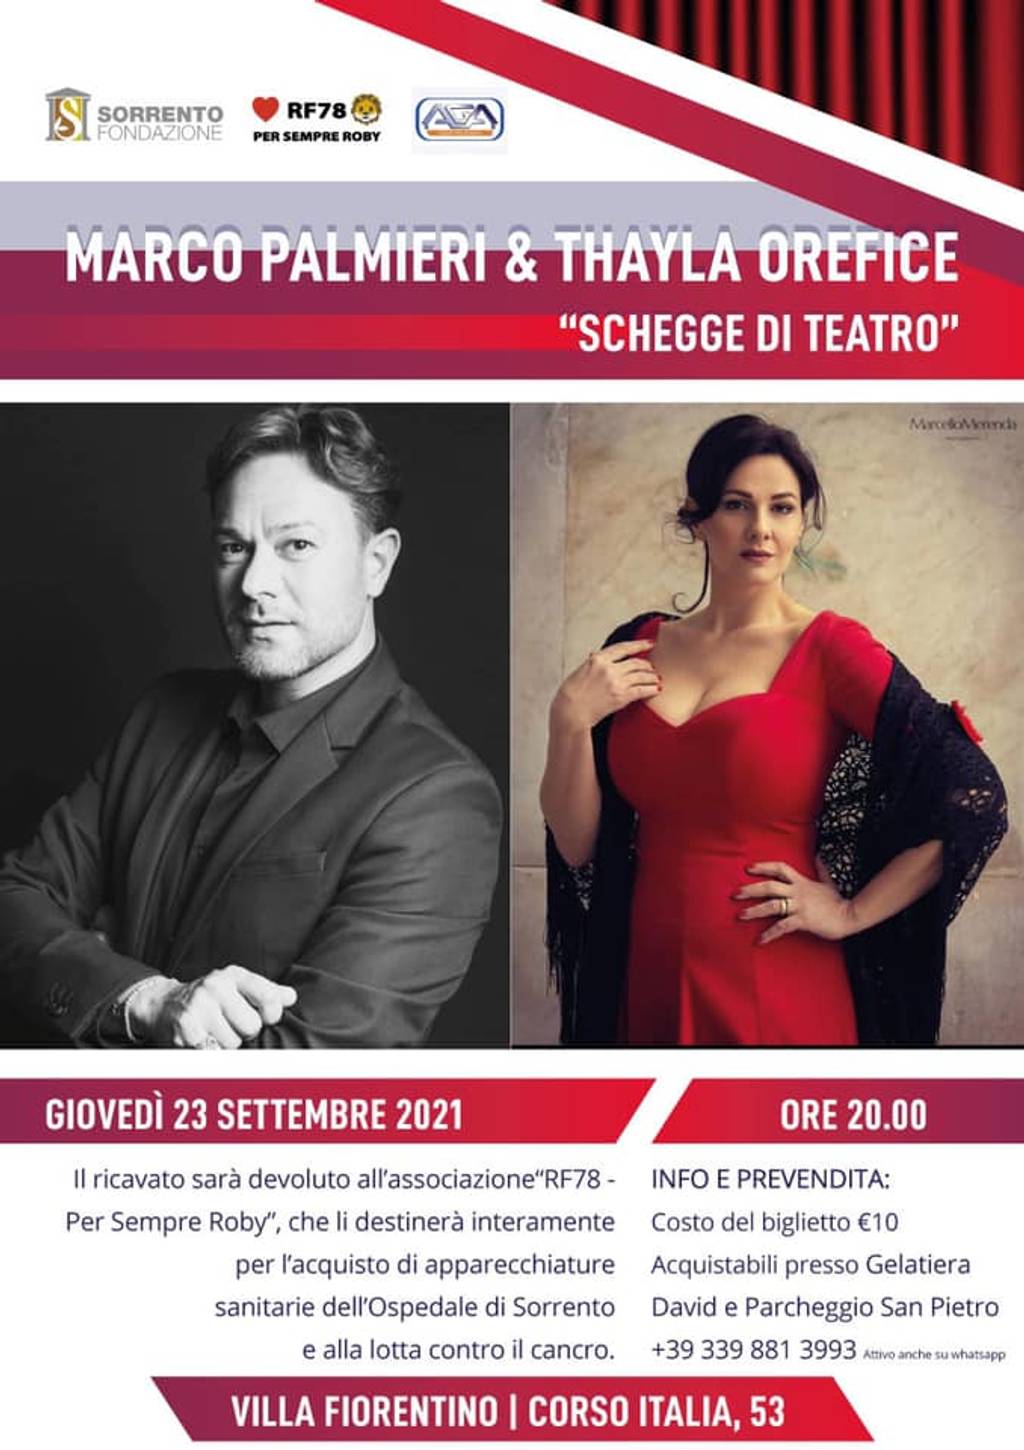 Marco Palmieri e Thayla Orefice in “Schegge di teatro”